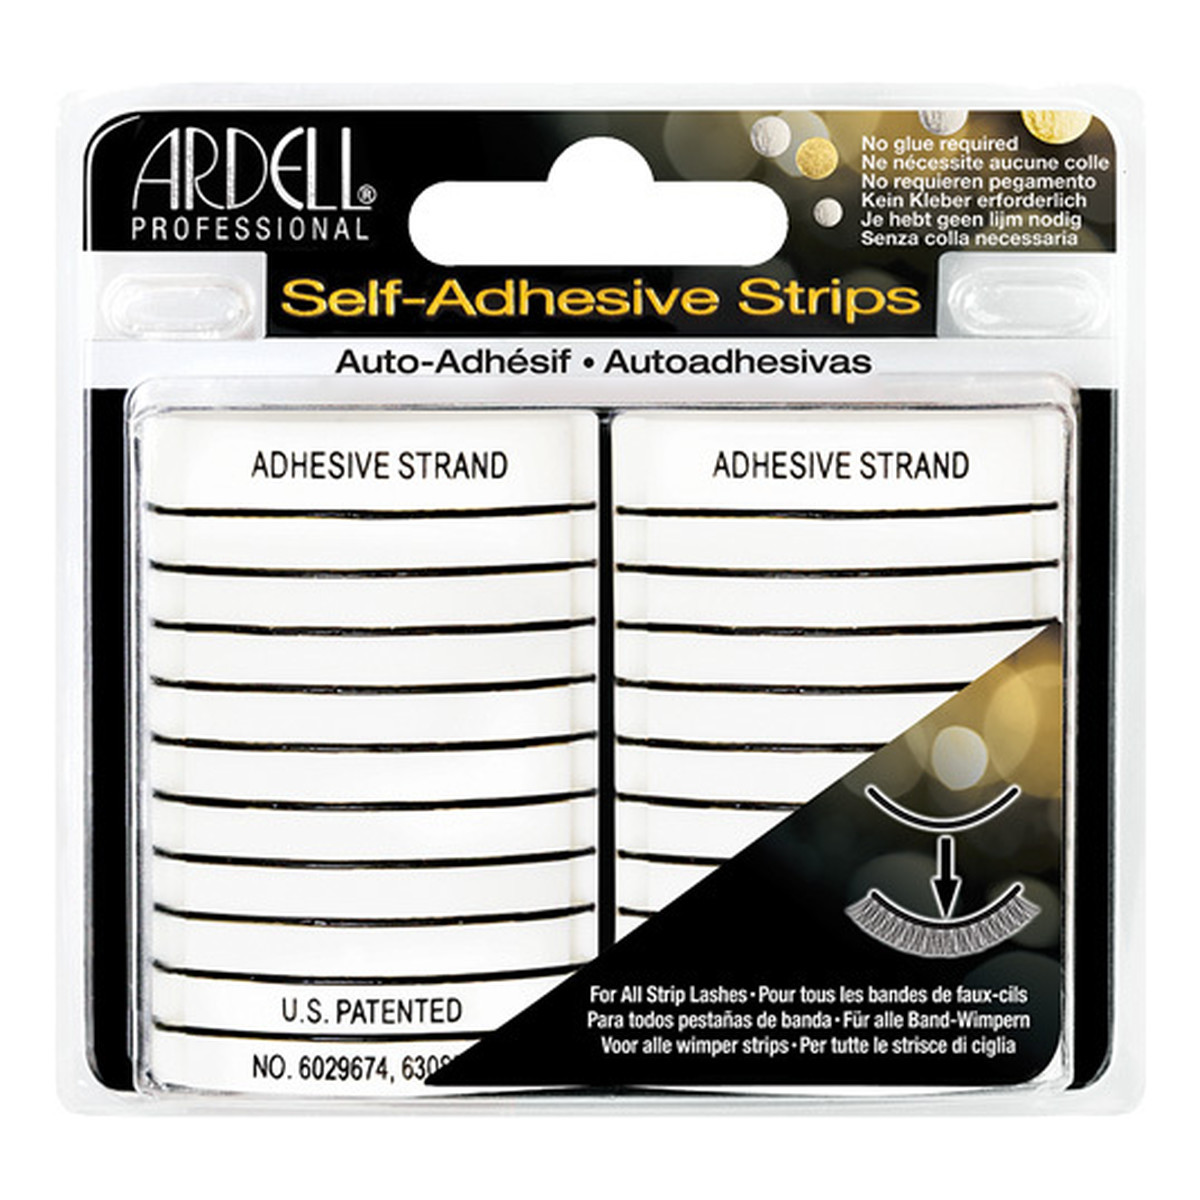 Ardell Self-Adhesive Strips Professional Paski Kleju Bezlateksowego Do Rzęs Samoprzylepnych